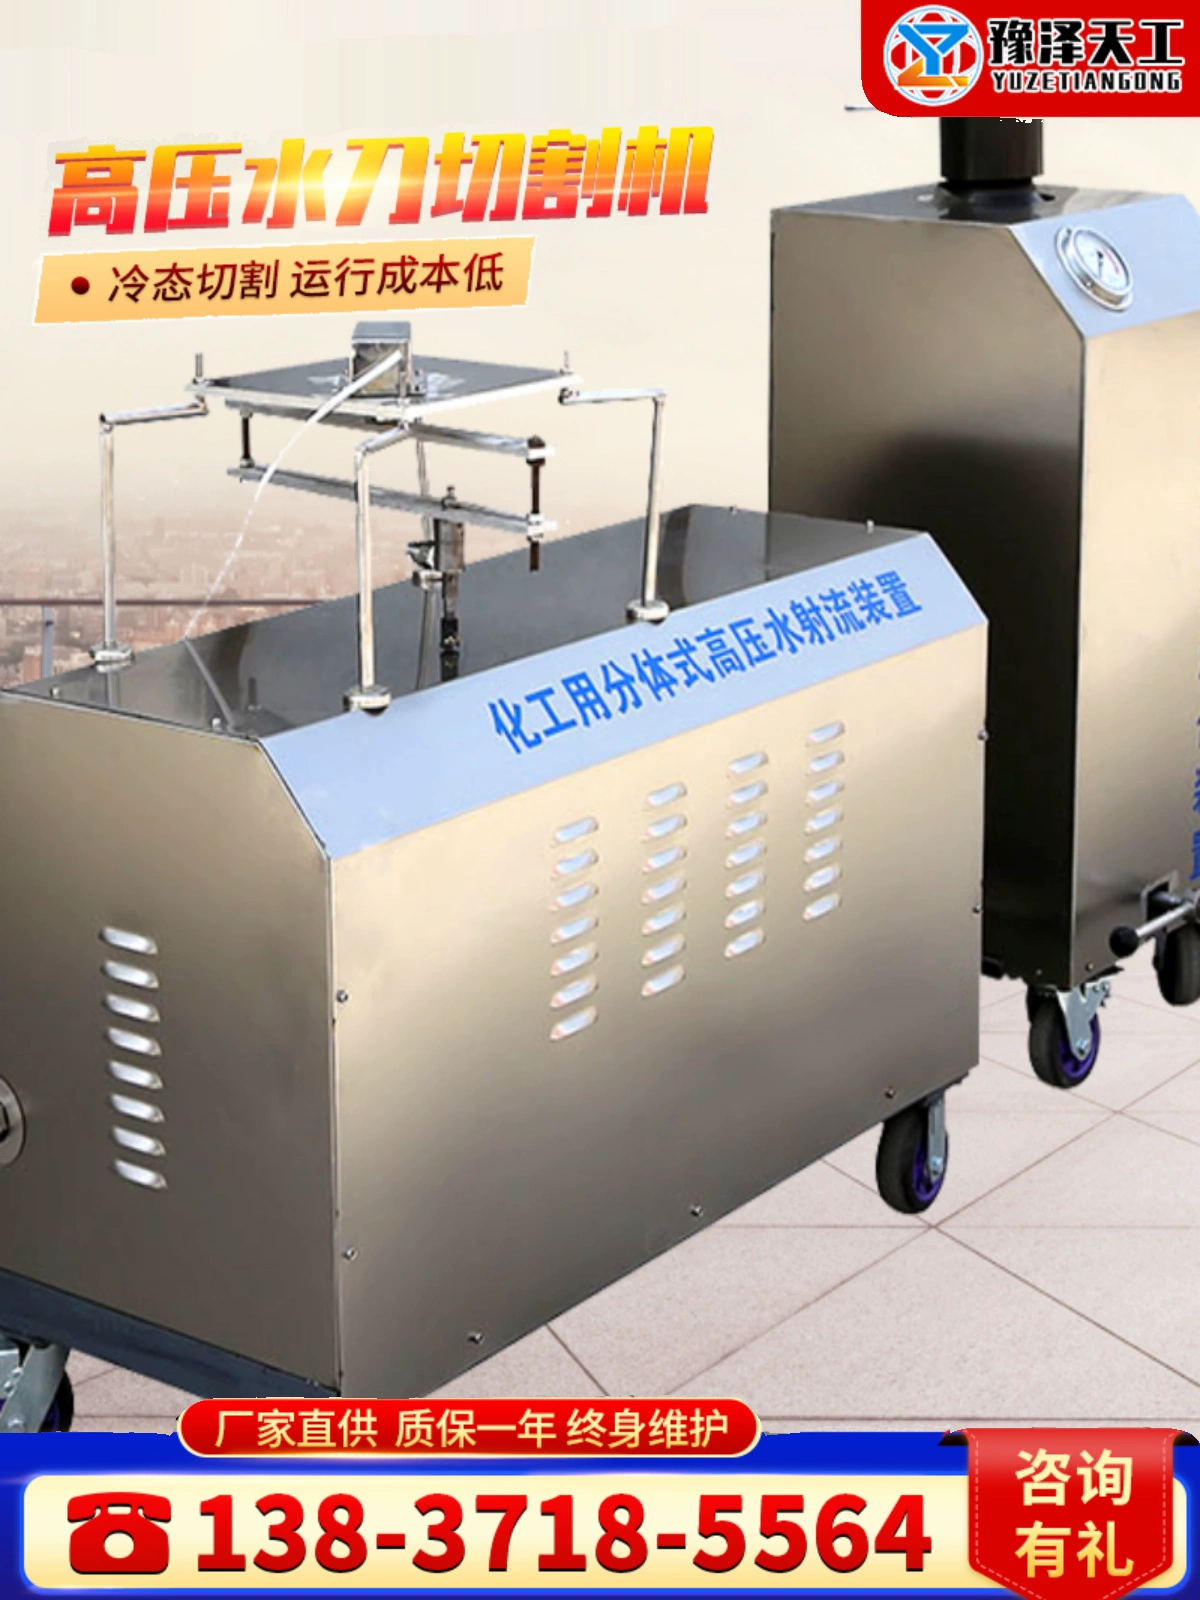 Máy cắt tia nước cầm tay cho các mỏ than hóa chất kim loại thùng dầu cắt tia nước máy cắt tia nước áp suất cực cao máy cắt kim loại bằng tia nước Máy cắt tia nước